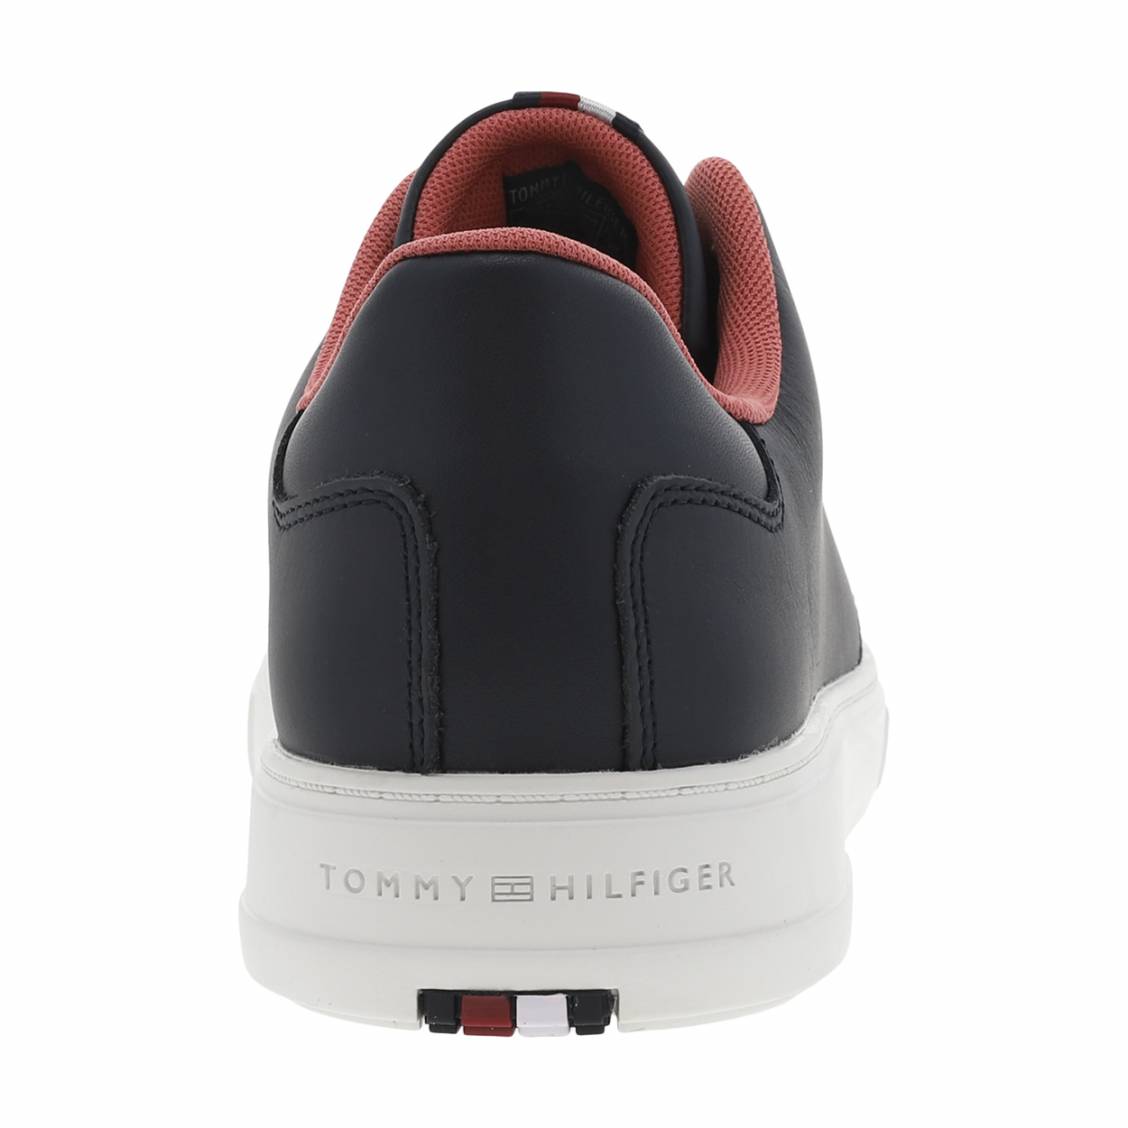 Baskets sneakers Tommy Hilfiger bleu marine blanc et rouge pour hom